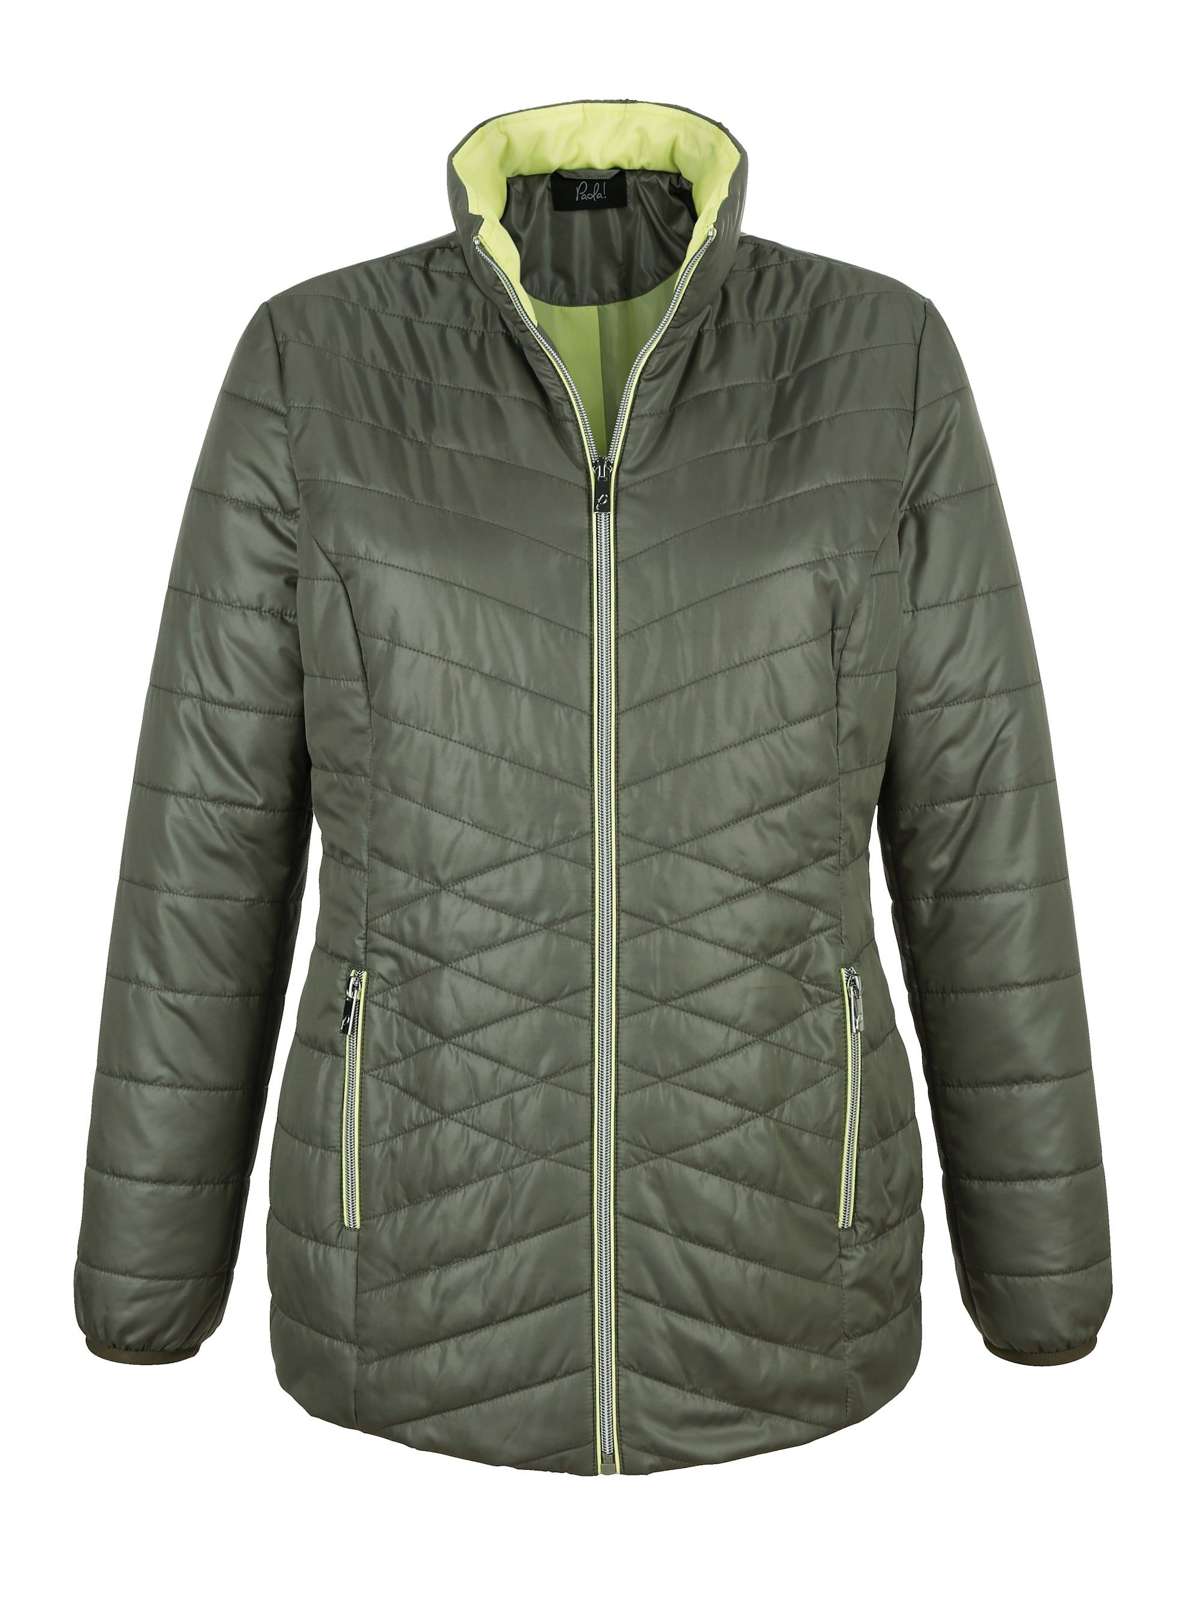 Стеганая куртка Стеганая куртка с деталями контрастного цвета